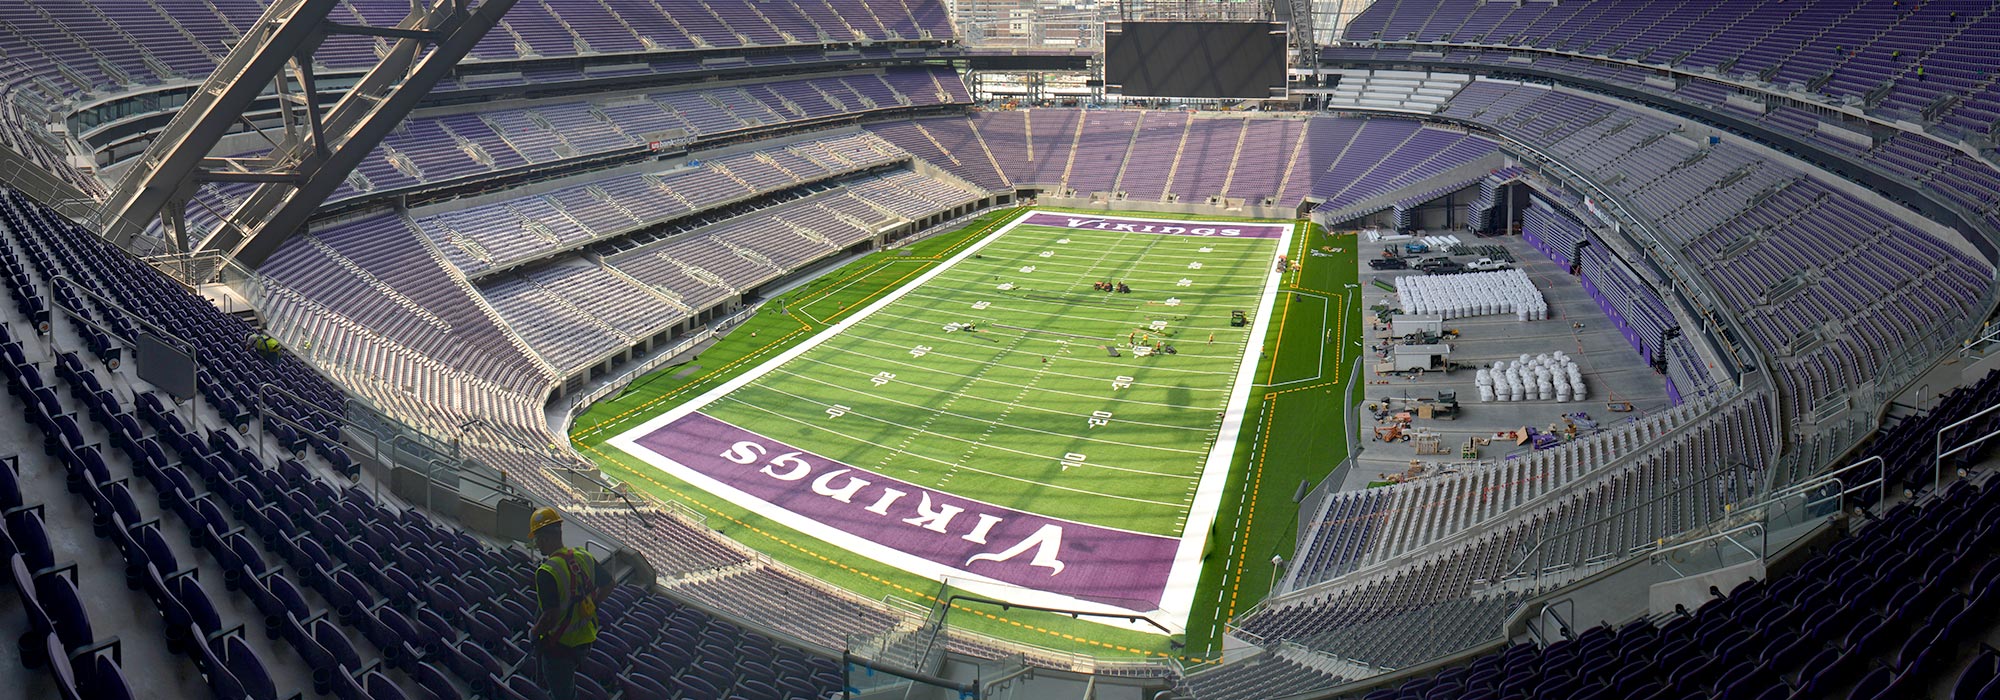 Minnesota Vikings - U.S. Bank Stadium